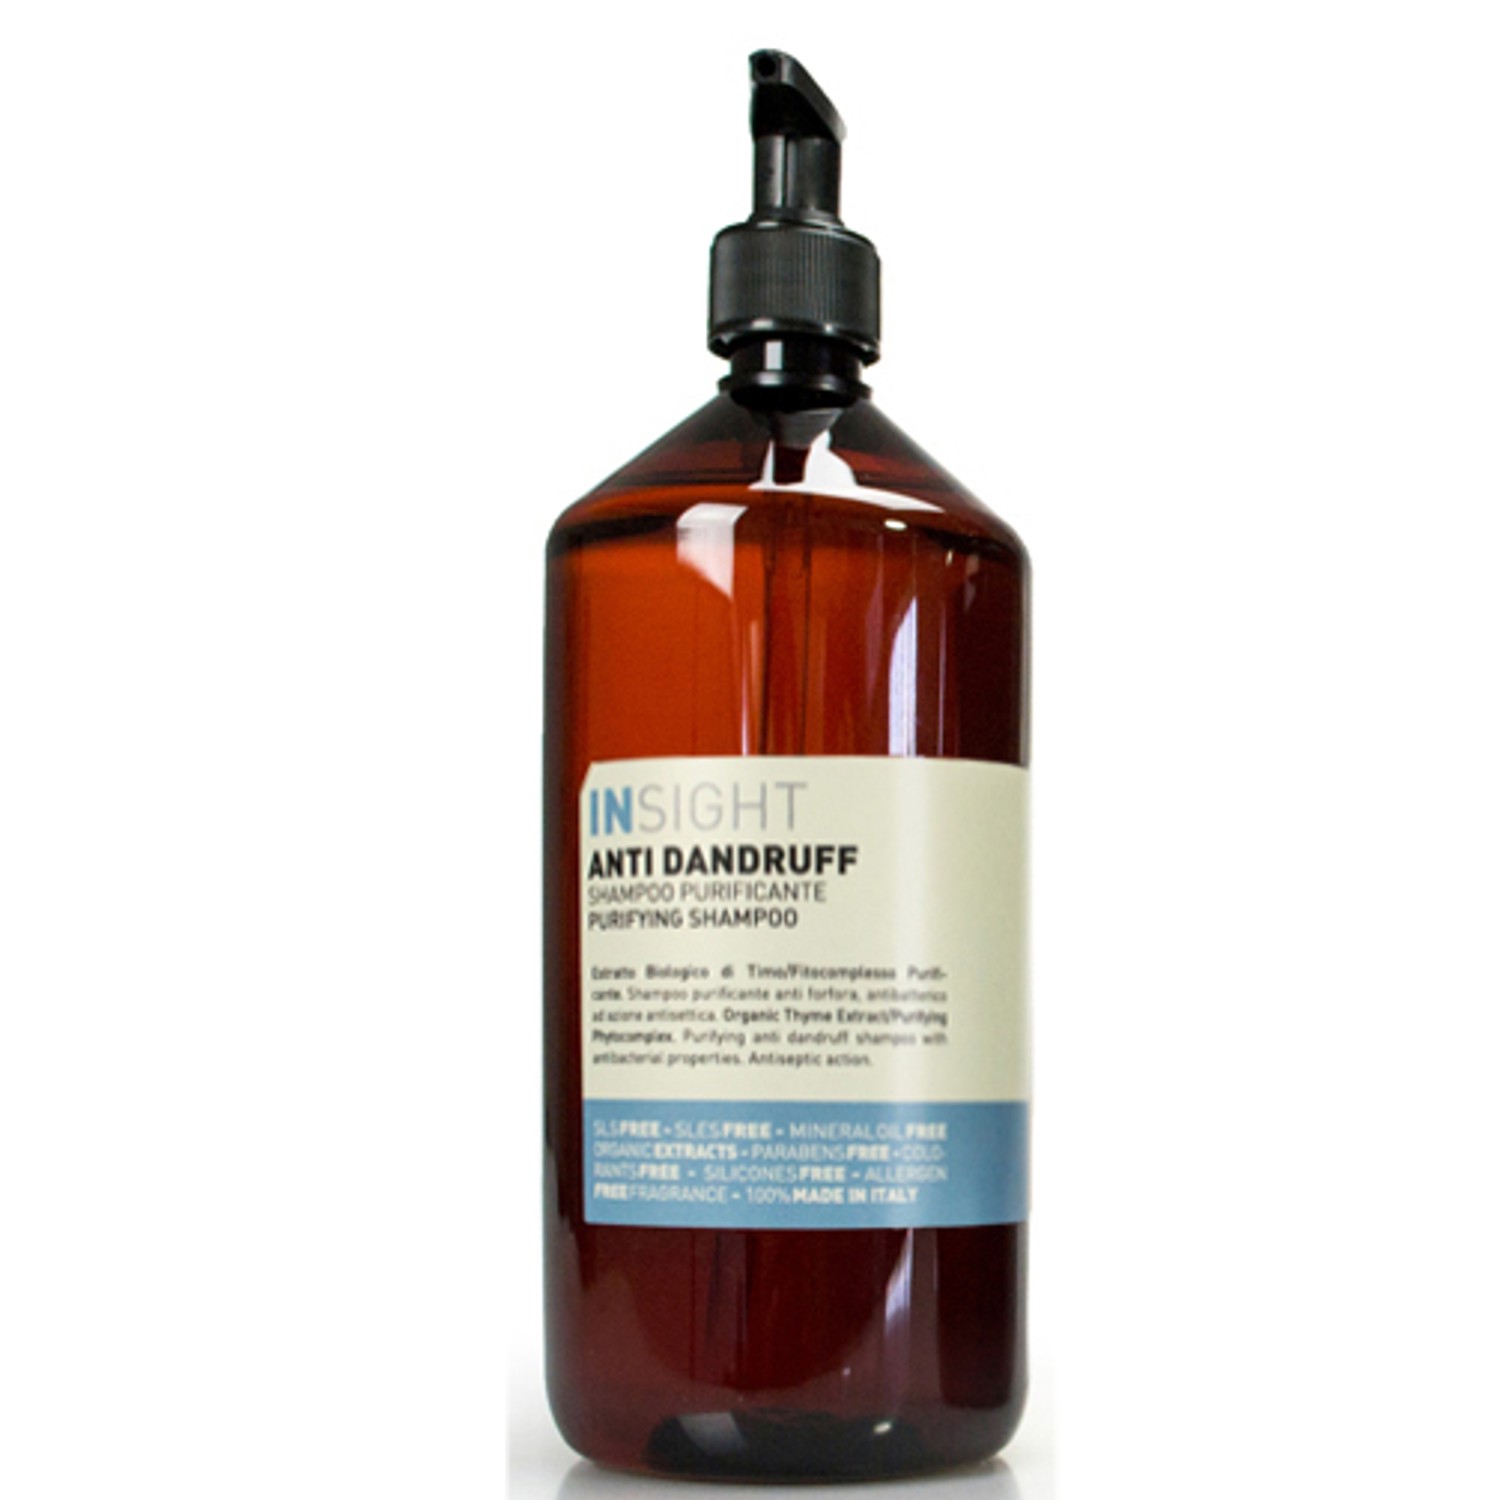 INSIGHT Anti Dandruff Purifying Shampoo 900 ml